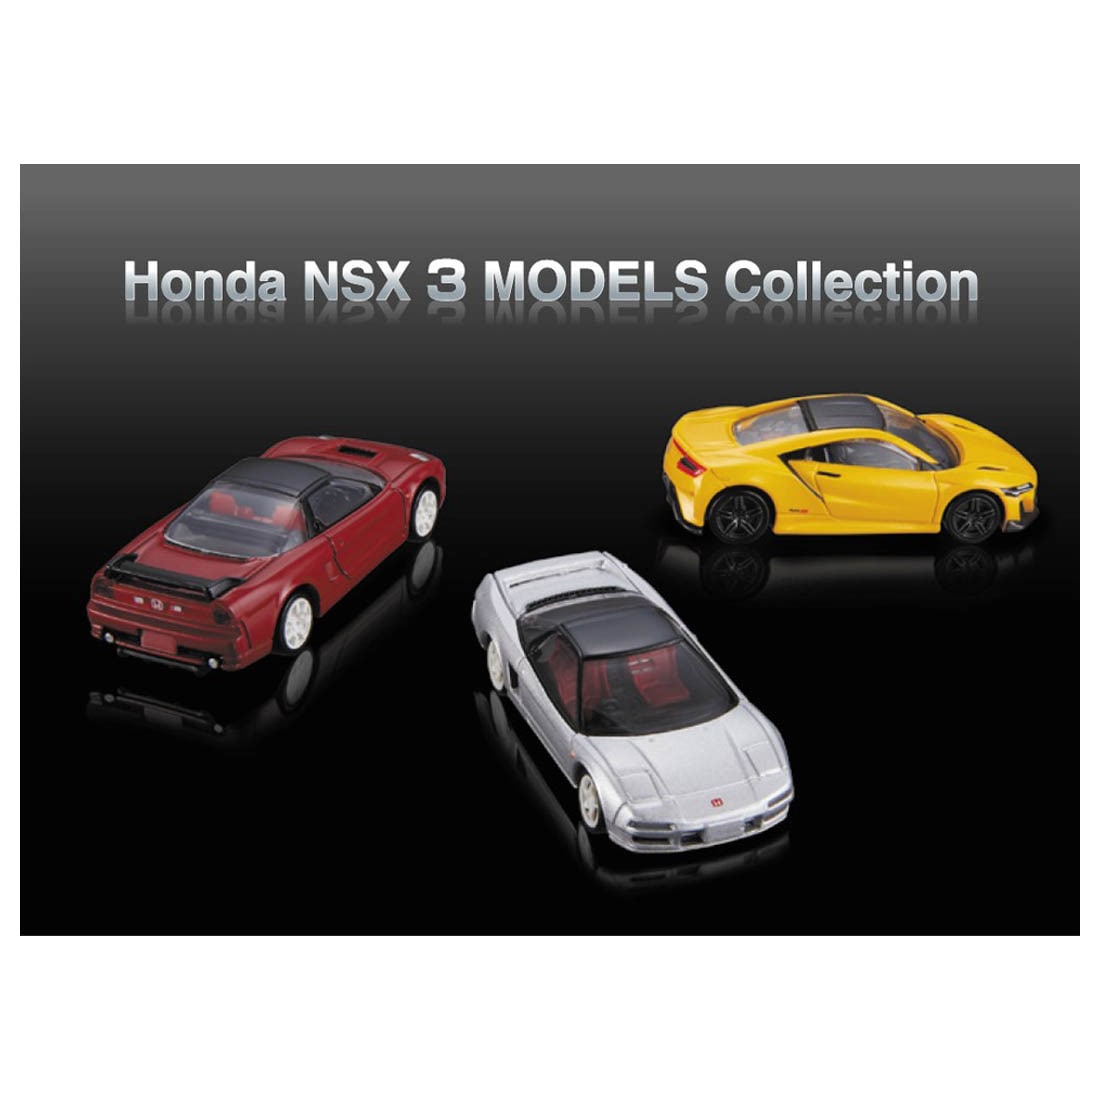 トミカプレミアム Honda NSX 3 MODELS Collection